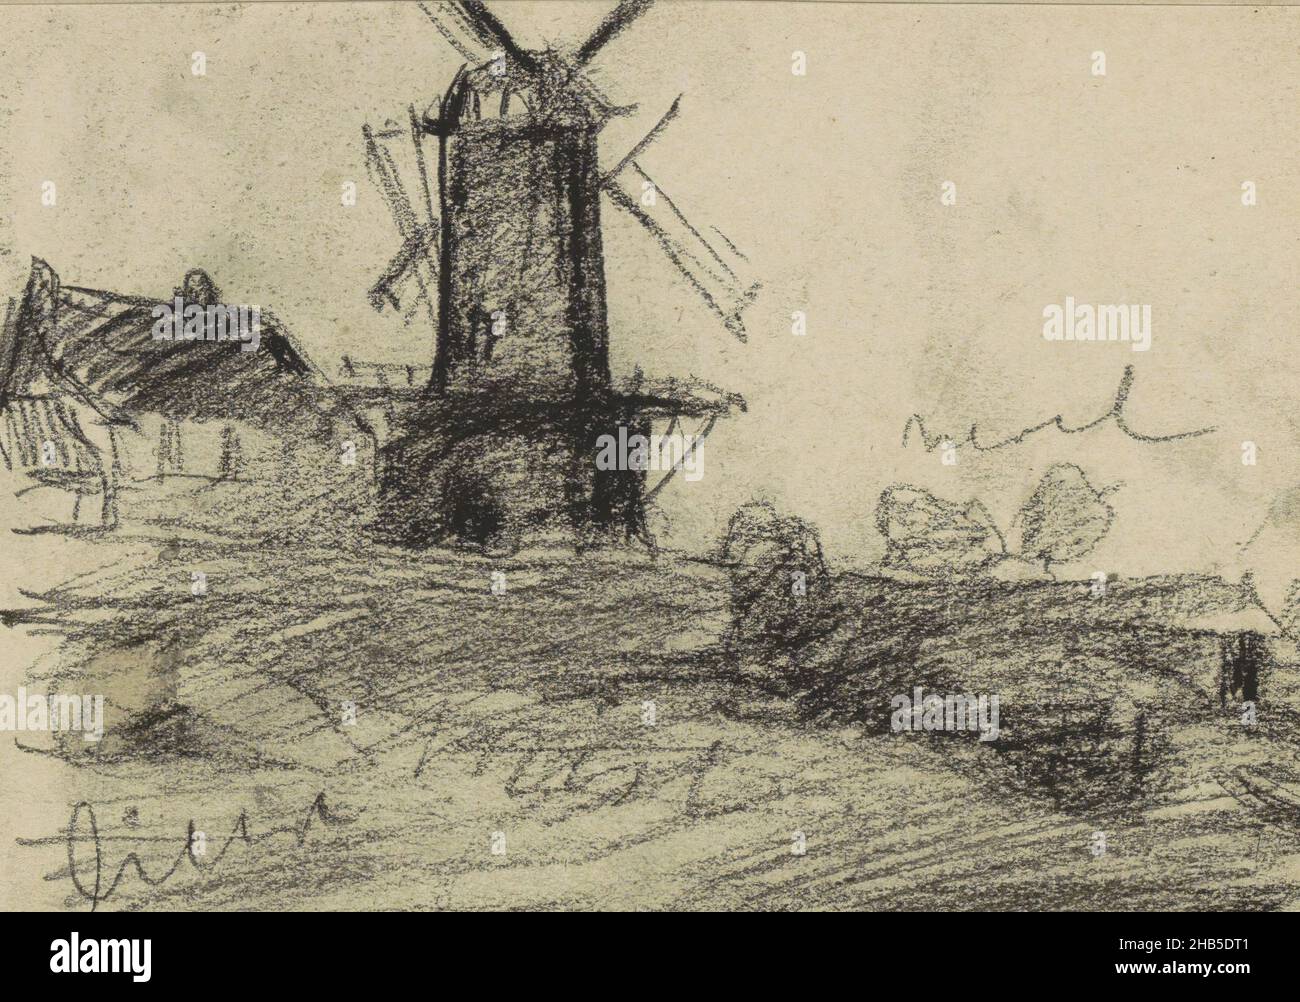 Pagina 44 da un libretto di 25 pagine, Vista del mulino a vento Rijn e Lek a Wijk bij Duurstede., disegnatore: Willem Witsen, Wijk bij Duurstede, 1906 - 1907, Willem Witsen, 1906 - 1907 Foto Stock